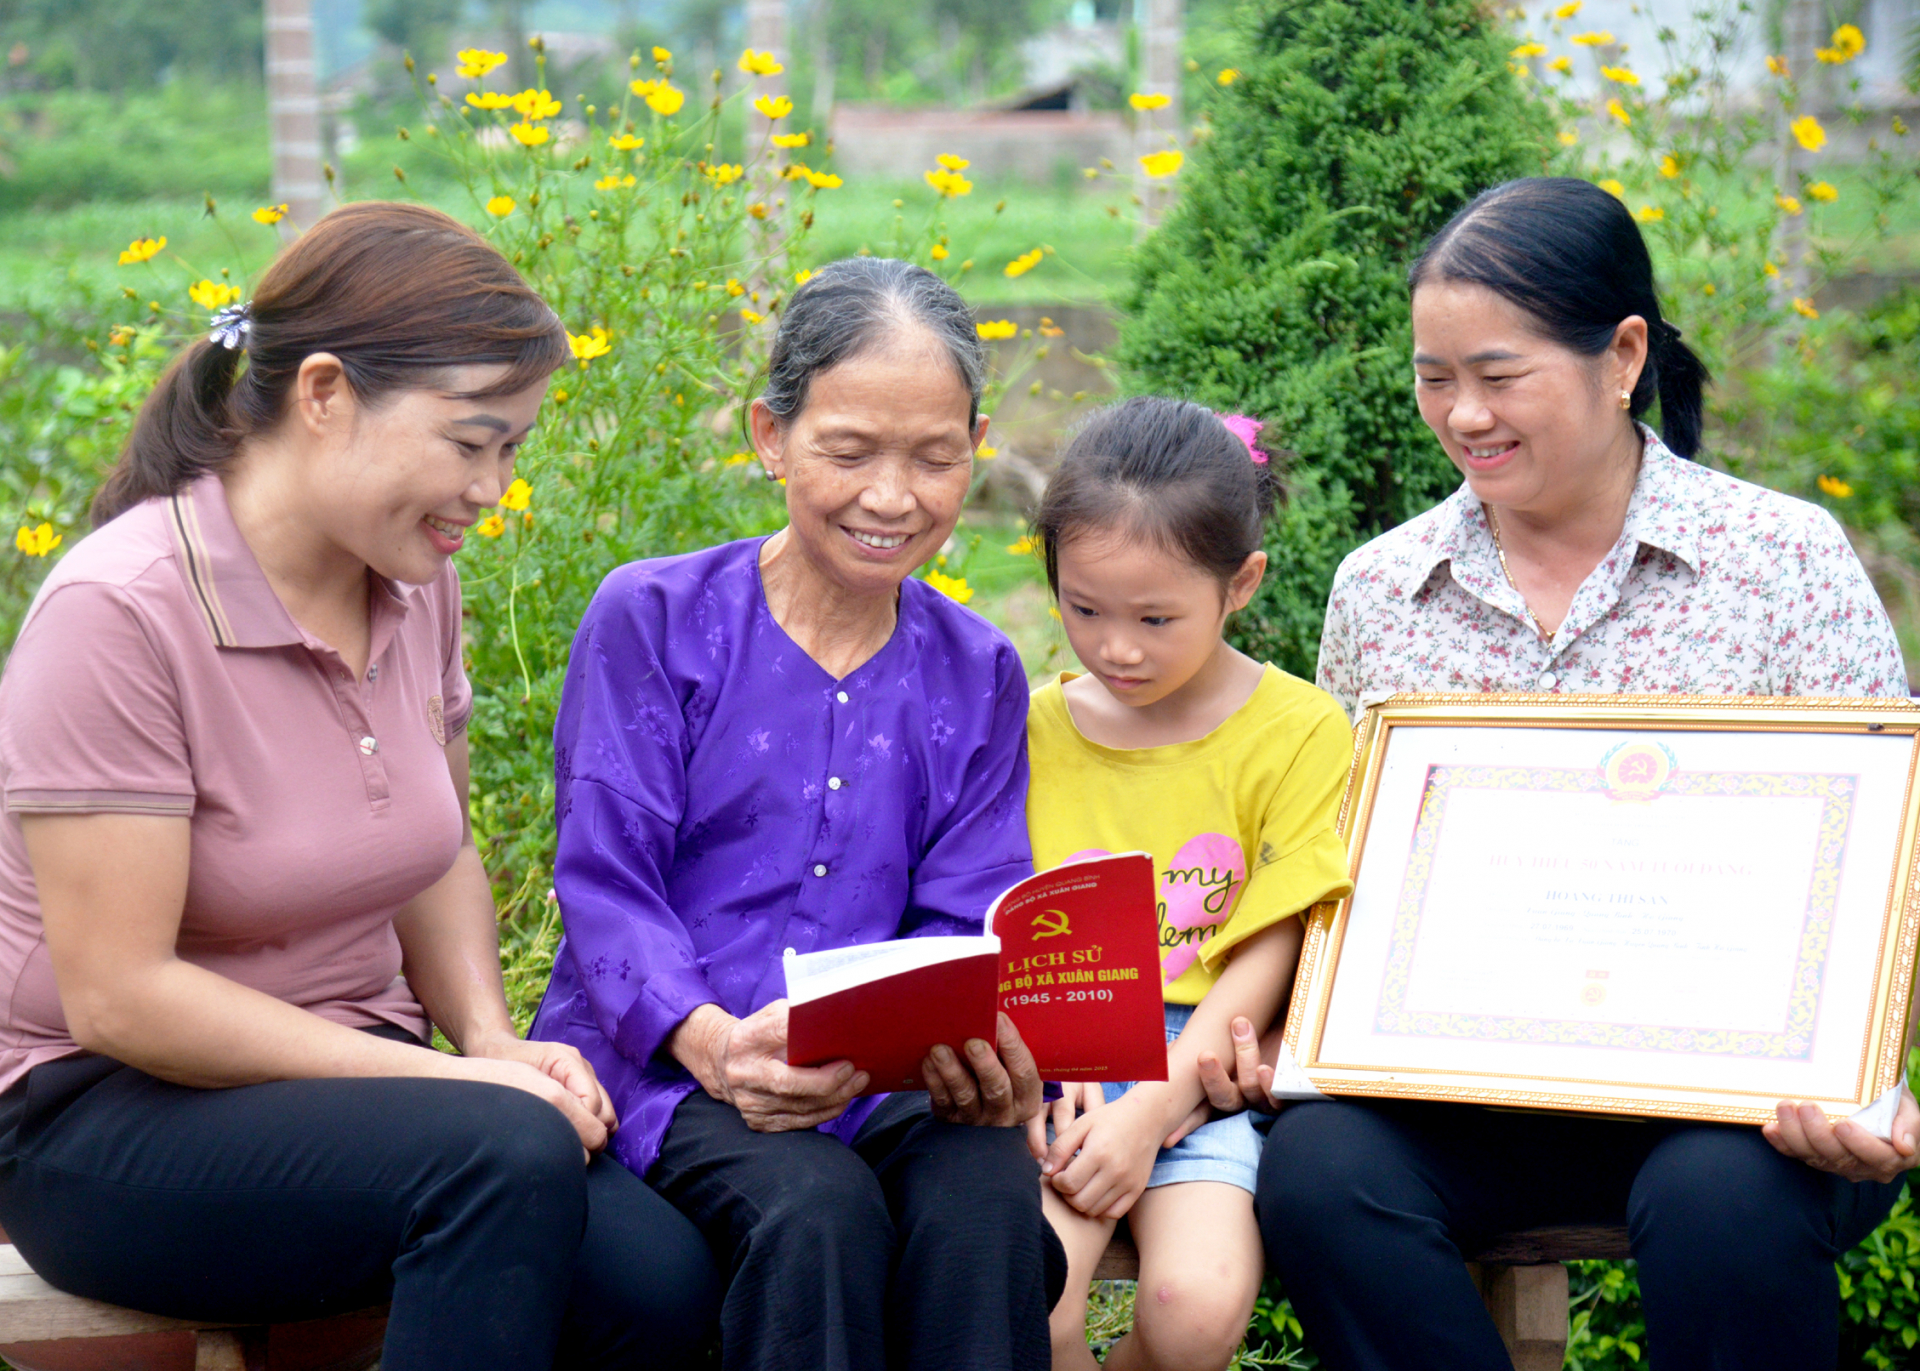 Bà Hoàng Thị Sản, thôn Tịnh, xã Xuân Giang (Quang Bình) nhắc nhở các thế hệ con, cháu phát huy truyền thống yêu nước của quê hương.